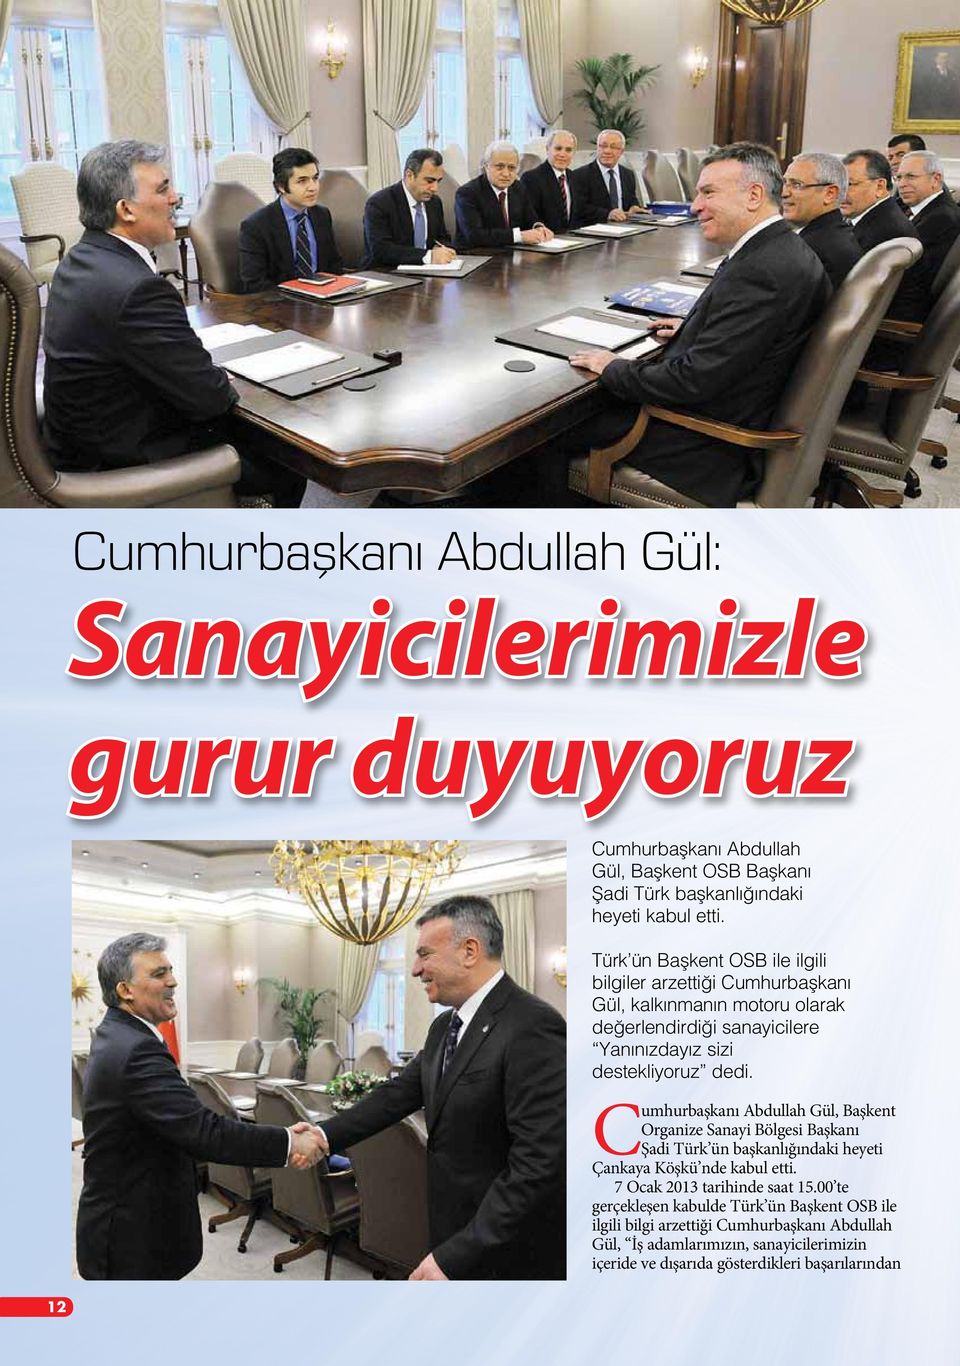 C umhurbaşkanı Abdullah Gül, Başkent Organize Sanayi Bölgesi Başkanı Şadi Türk ün başkanlığındaki heyeti Çankaya Köşkü nde kabul etti. 7 Ocak 2013 tarihinde saat 15.